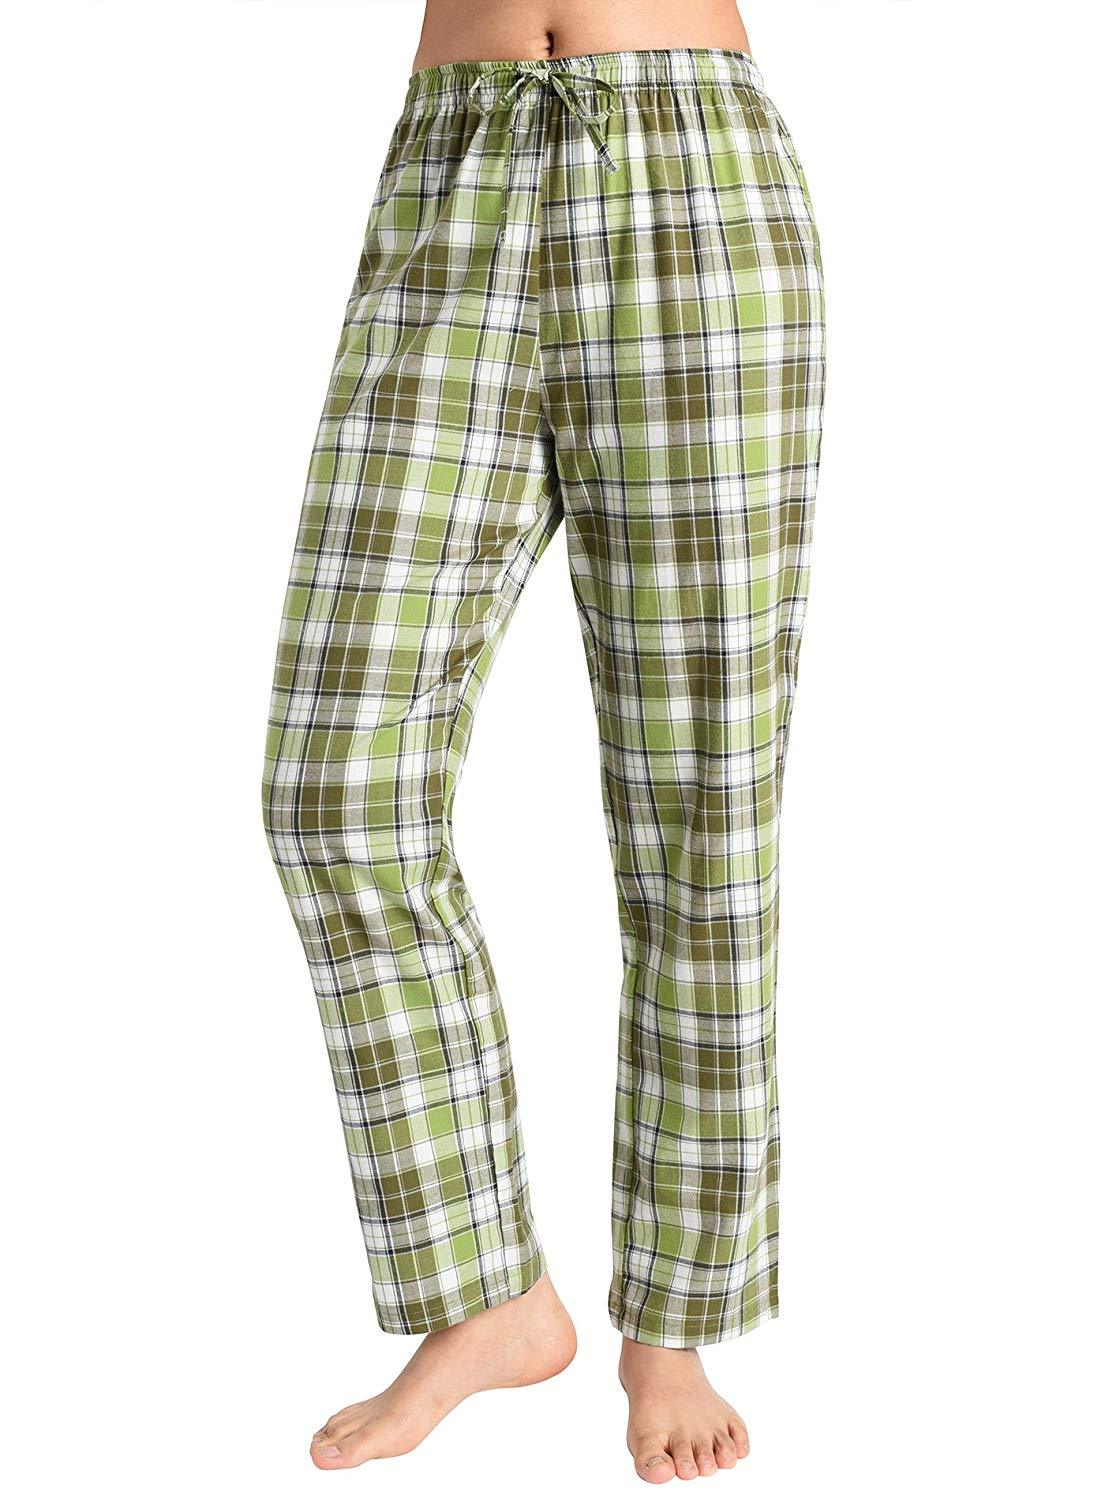 Leisureland Women's Green Plaid Lounge Pajama Pants 